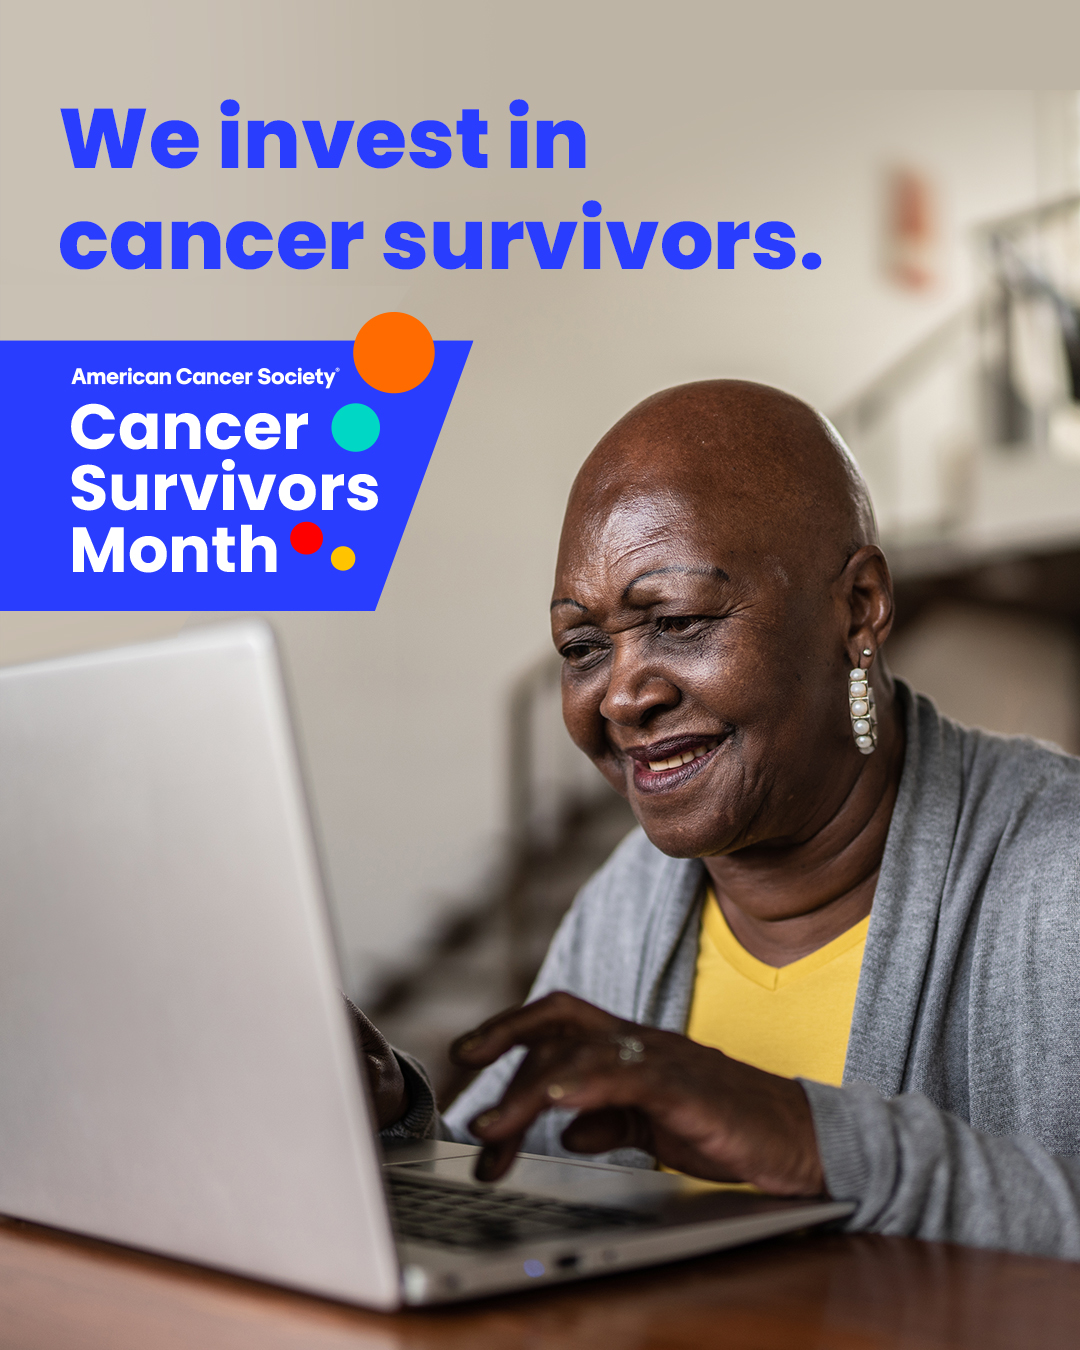 Cancer Survivors Day & Month_SocialPost2_1080x1350